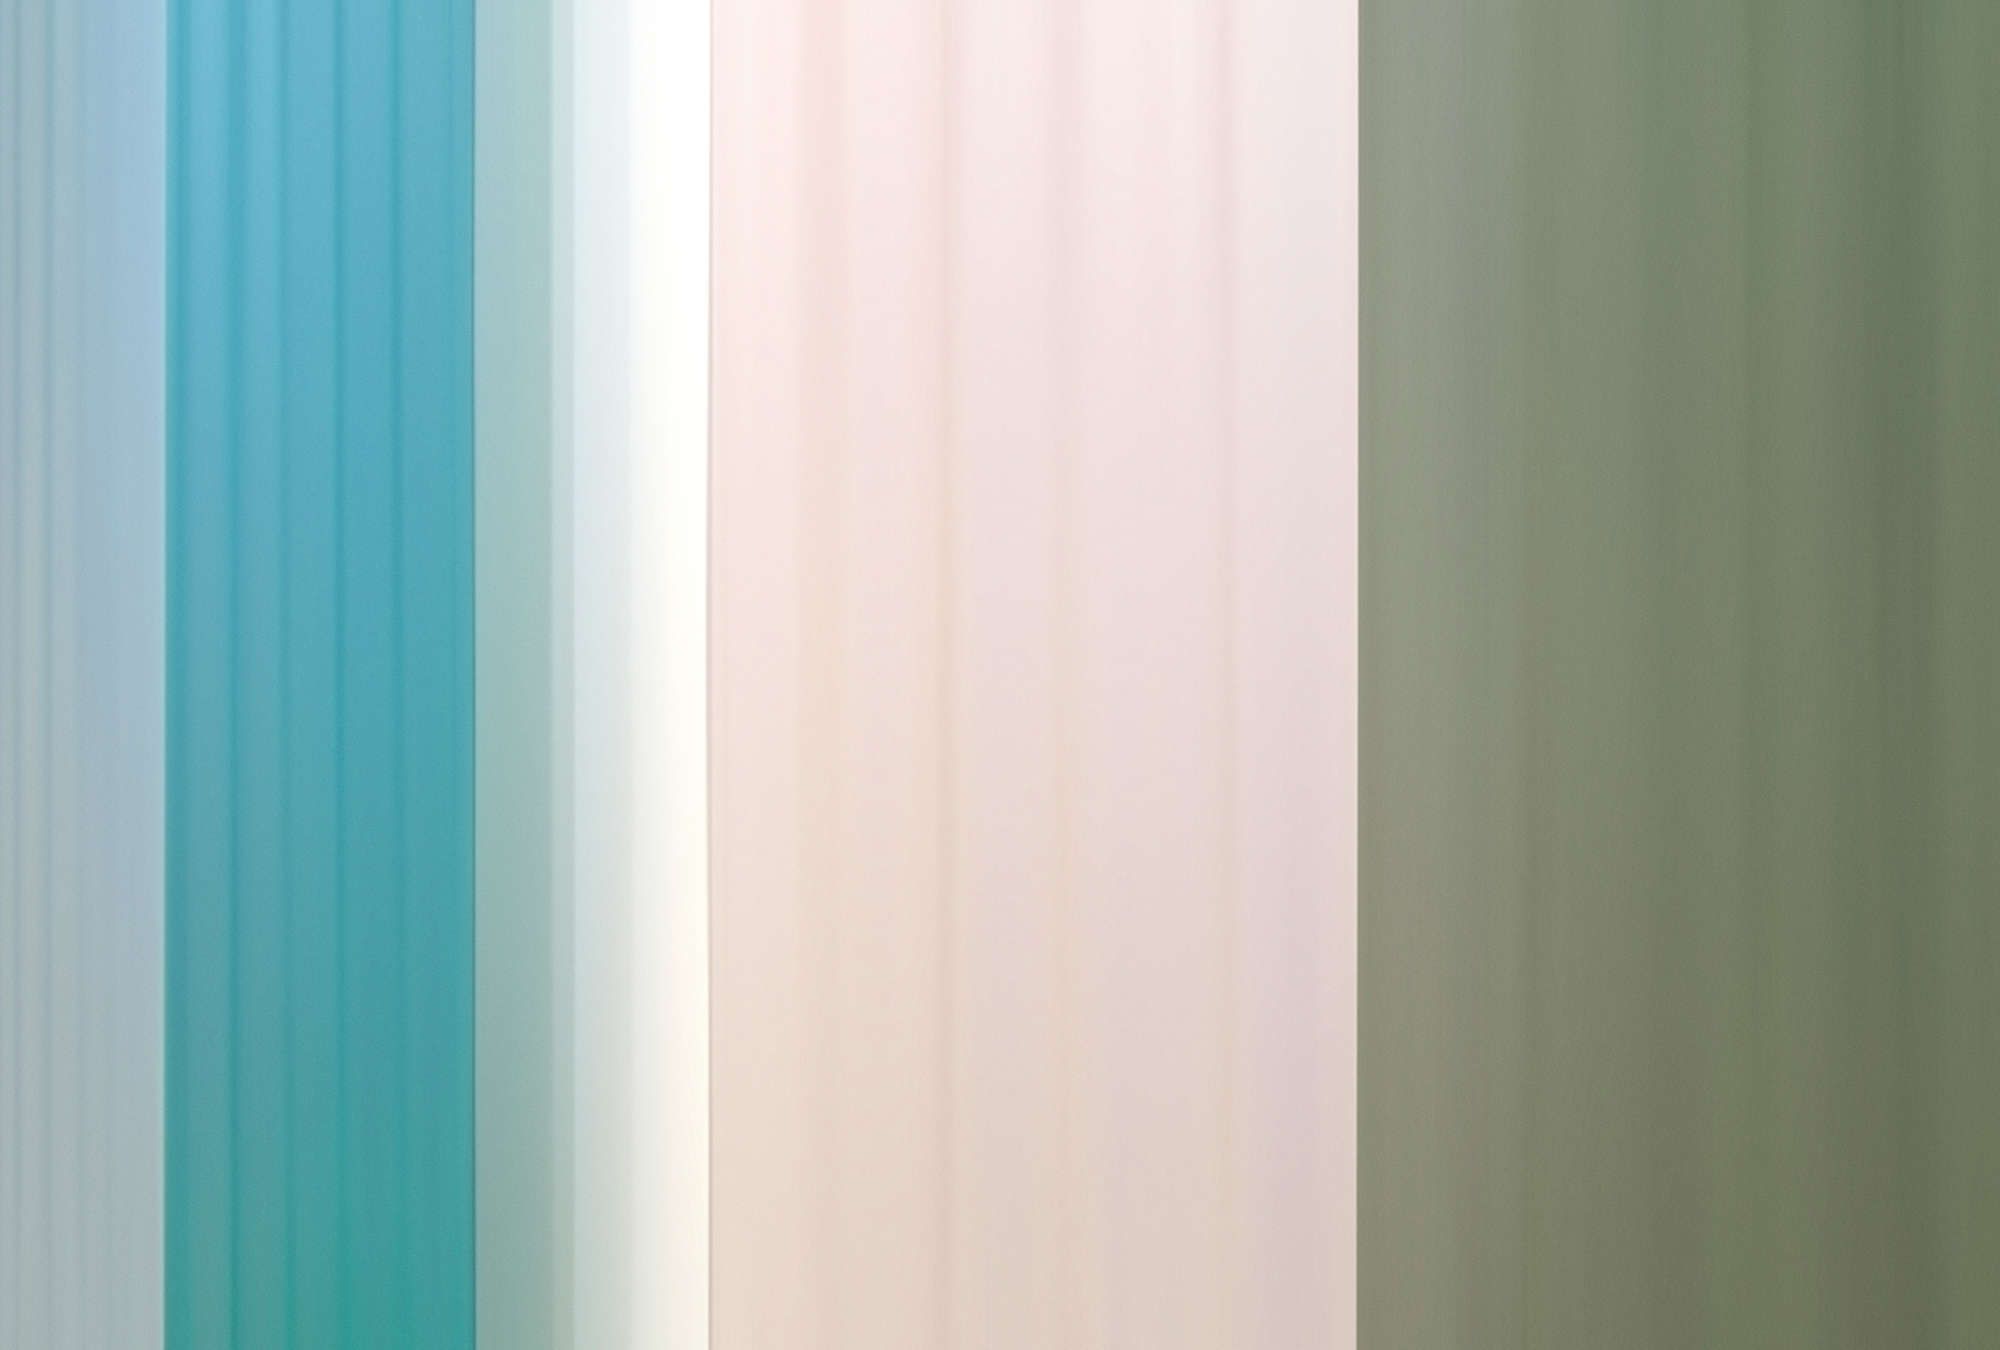             papier peint en papier panoramique »co-colores 4« - dégradé avec rayures - turquoise, crème, vert | Intissé lisse, légèrement nacré
        